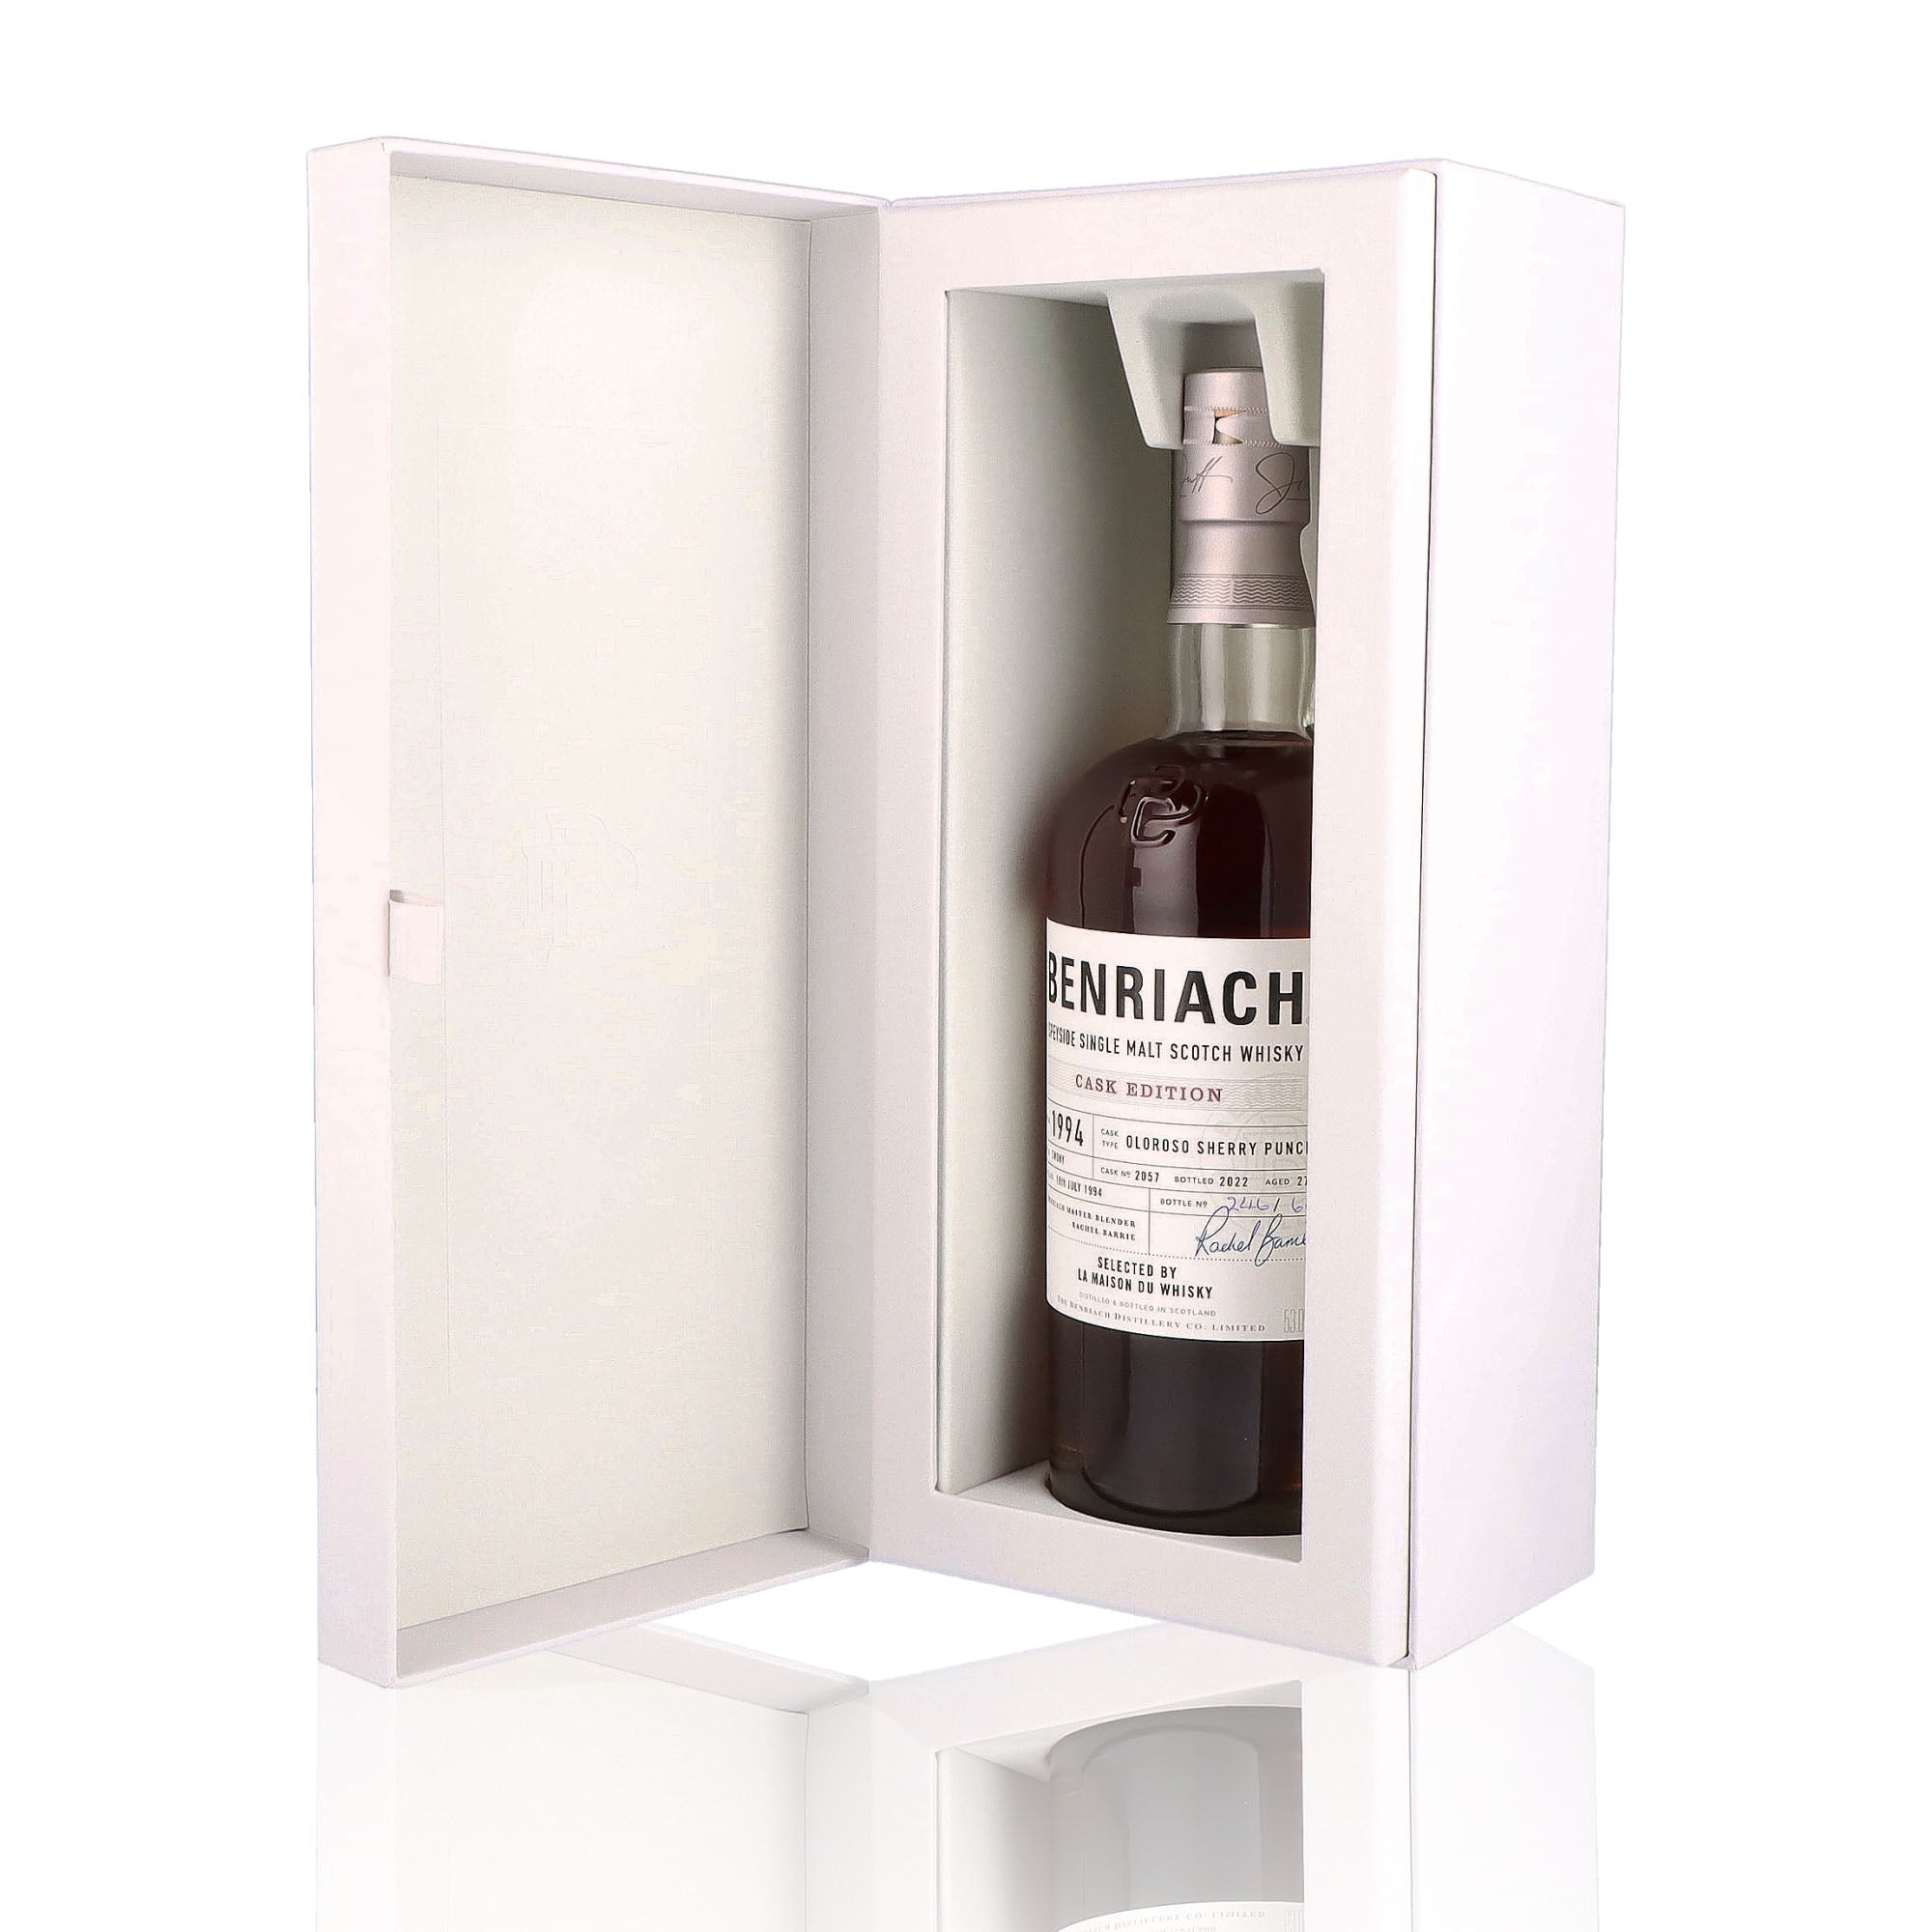 Une bouteille de Scotch Whisky Single Malt de la marque Benriach, nommée First Fill Smoky Oloroso Puncheon, 27 ans d'âge, du millésime 1994.